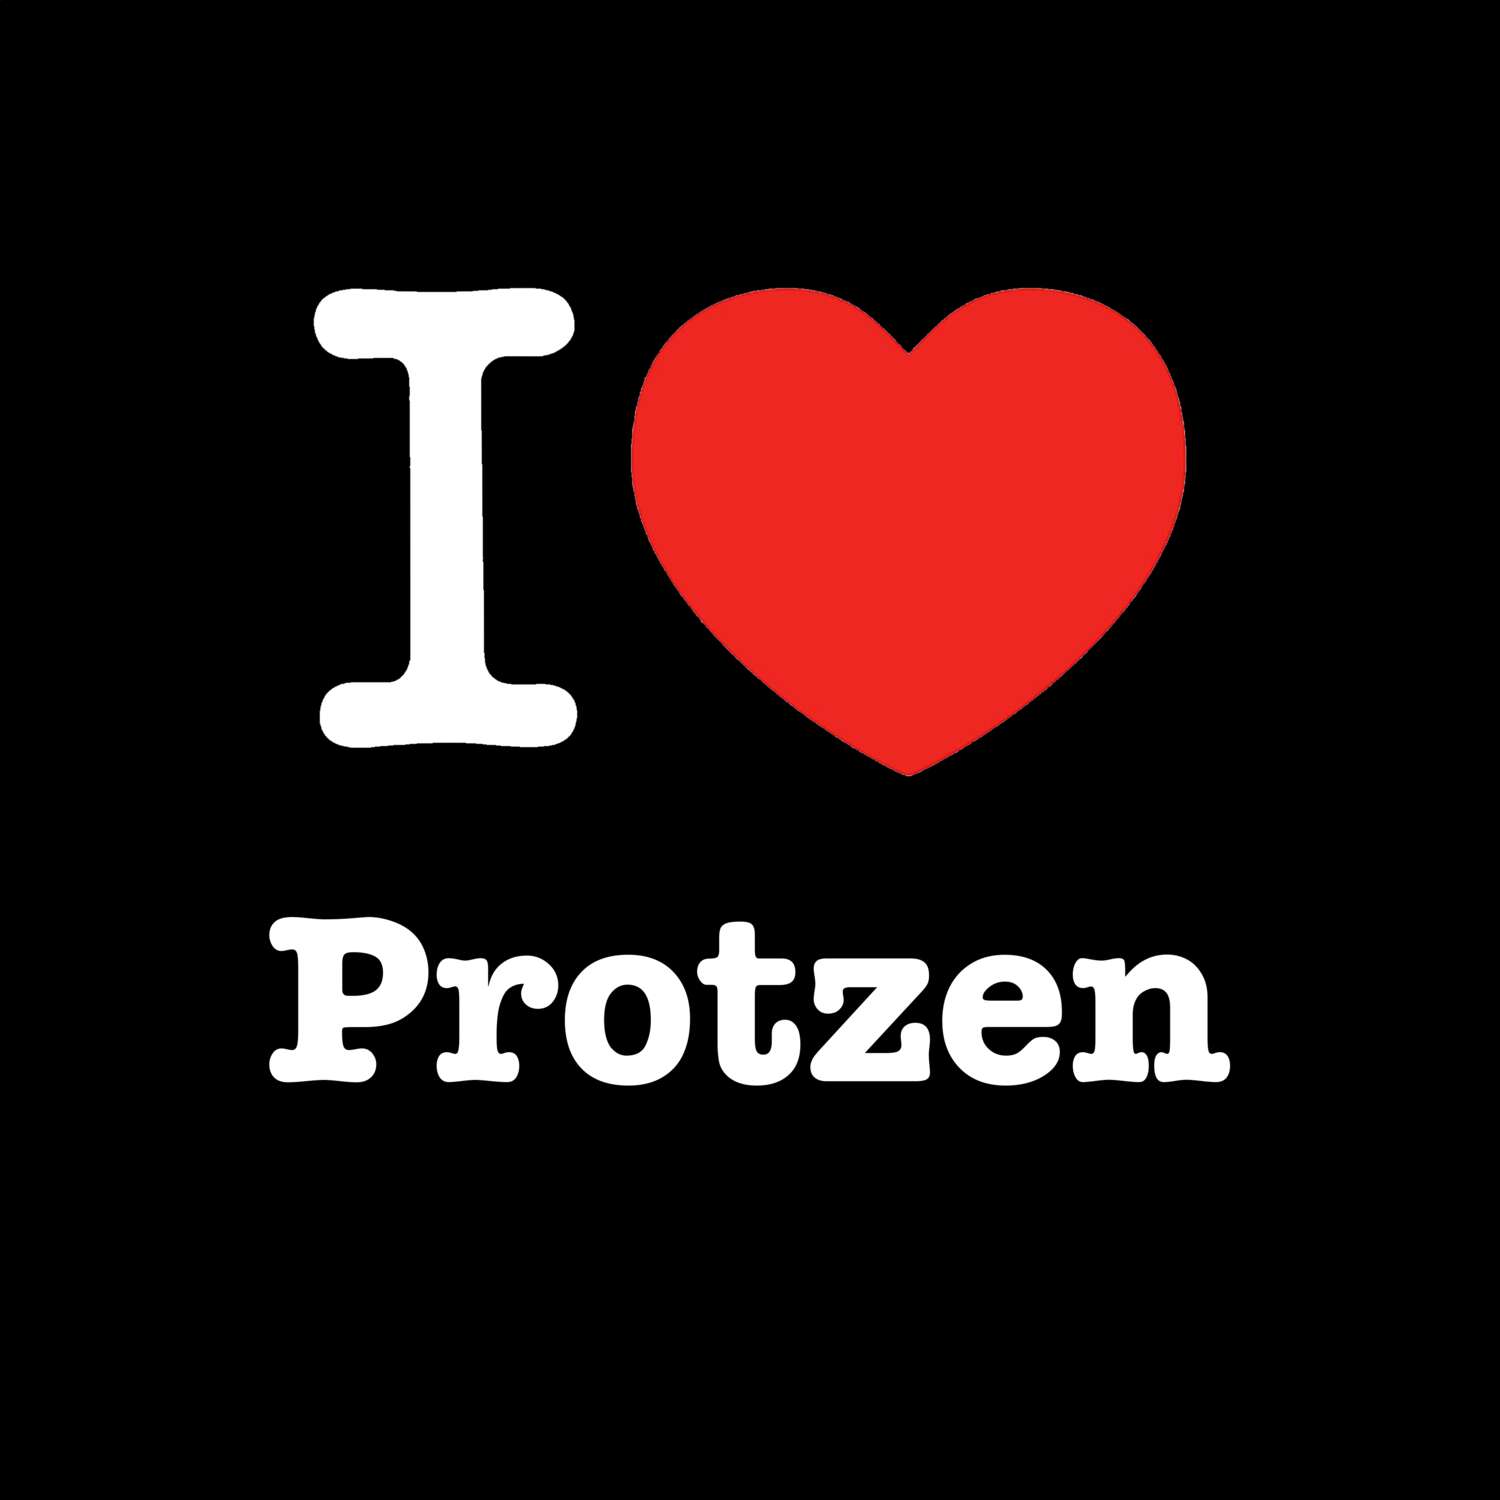 Protzen T-Shirt »I love«